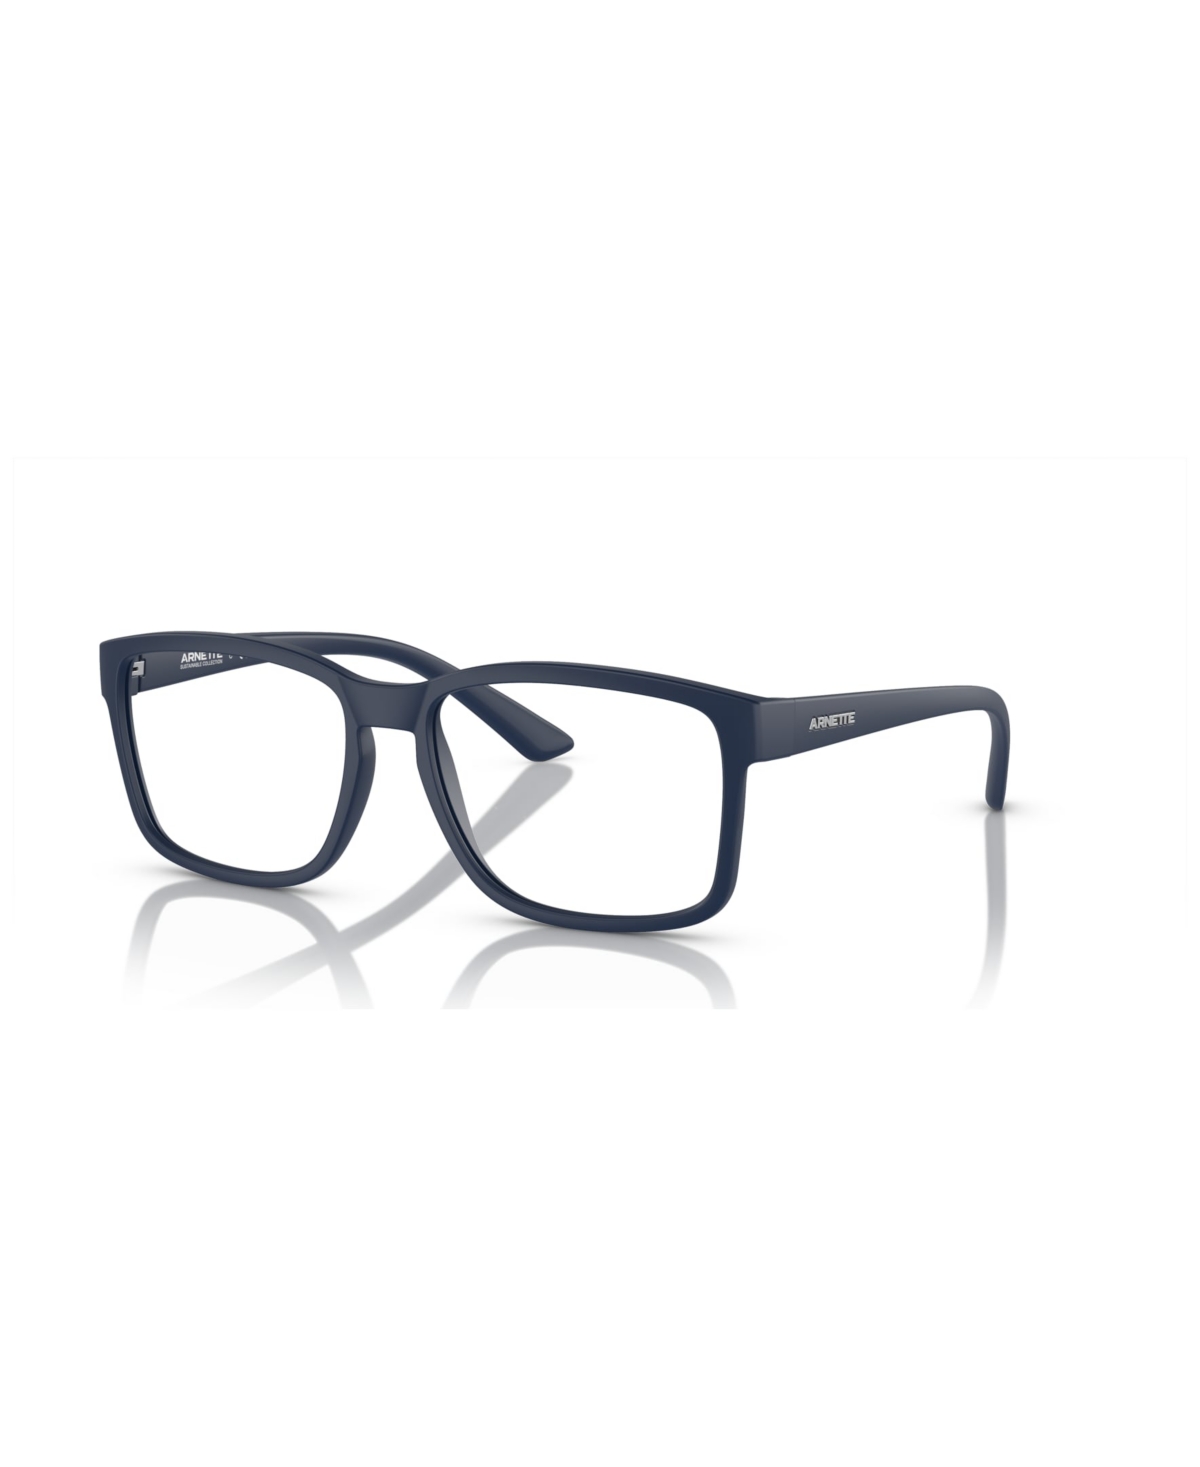 Men's Dirkk Eyeglasses, AN7177 - Matte Blue